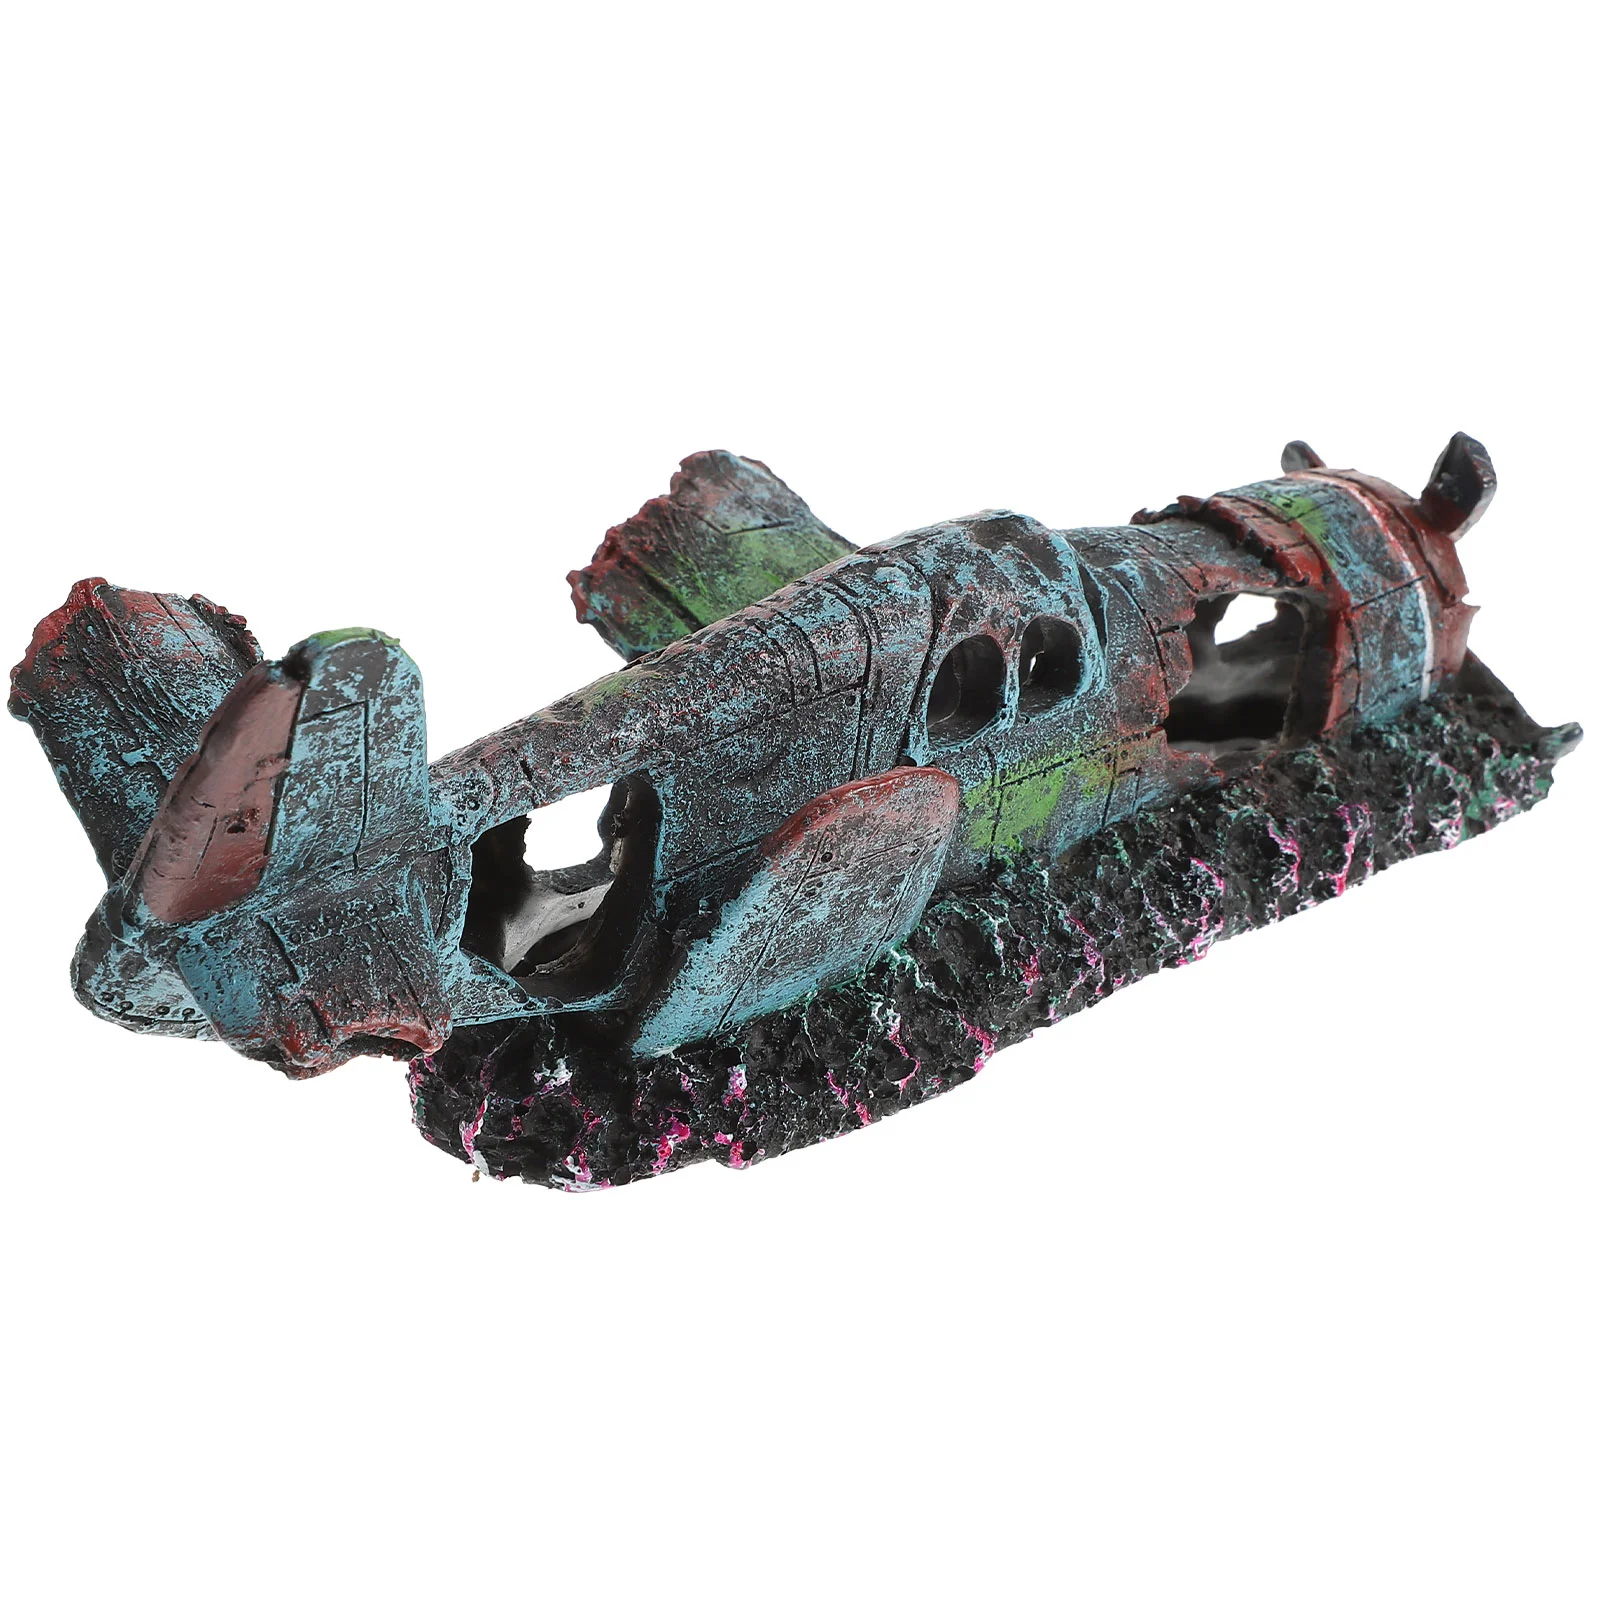 

Aquarium Plane Wreckage Landscape Resin Crafts Desktop Tank Adornments, Reptile Hideout Decoration